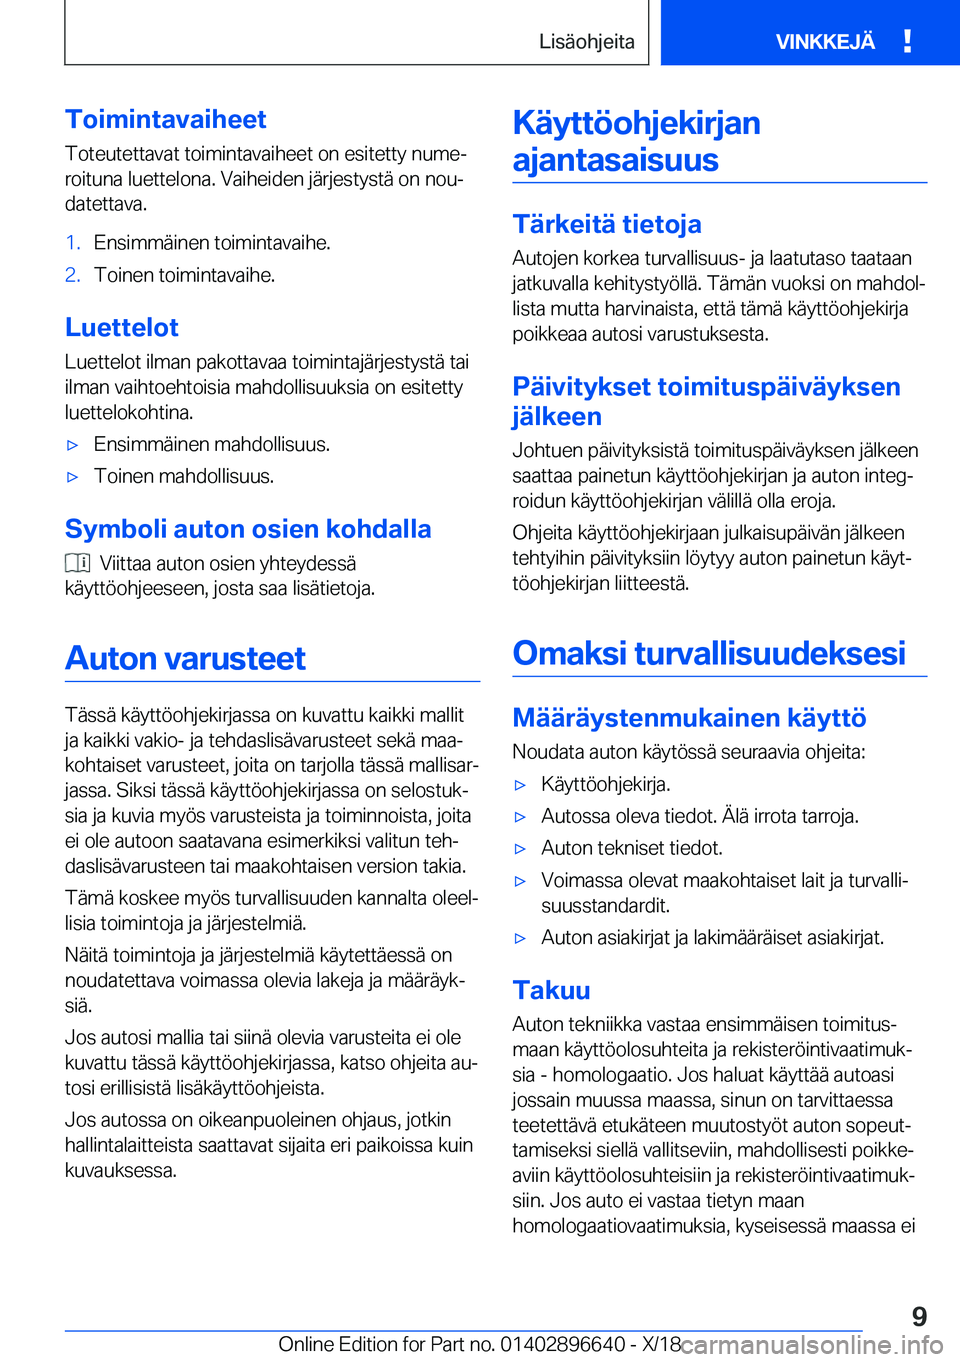 BMW M2 2019  Omistajan Käsikirja (in Finnish) �T�o�i�m�i�n�t�a�v�a�i�h�e�e�t�T�o�t�e�u�t�e�t�t�a�v�a�t��t�o�i�m�i�n�t�a�v�a�i�h�e�e�t��o�n��e�s�i�t�e�t�t�y��n�u�m�ej
�r�o�i�t�u�n�a��l�u�e�t�t�e�l�o�n�a�.��V�a�i�h�e�i�d�e�n��j�